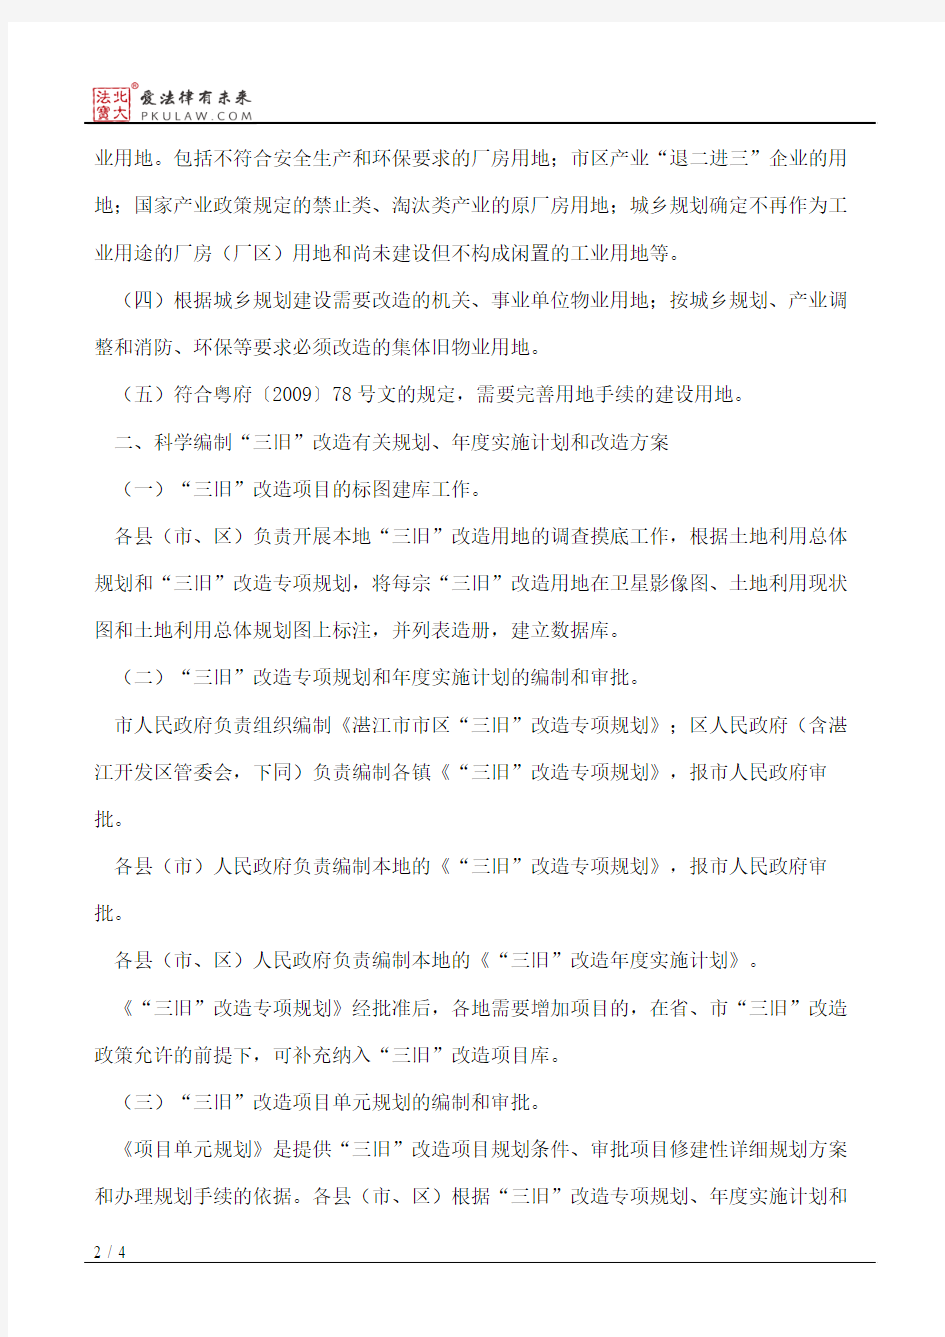 湛江市人民政府关于湛江市“三旧”改造的实施意见